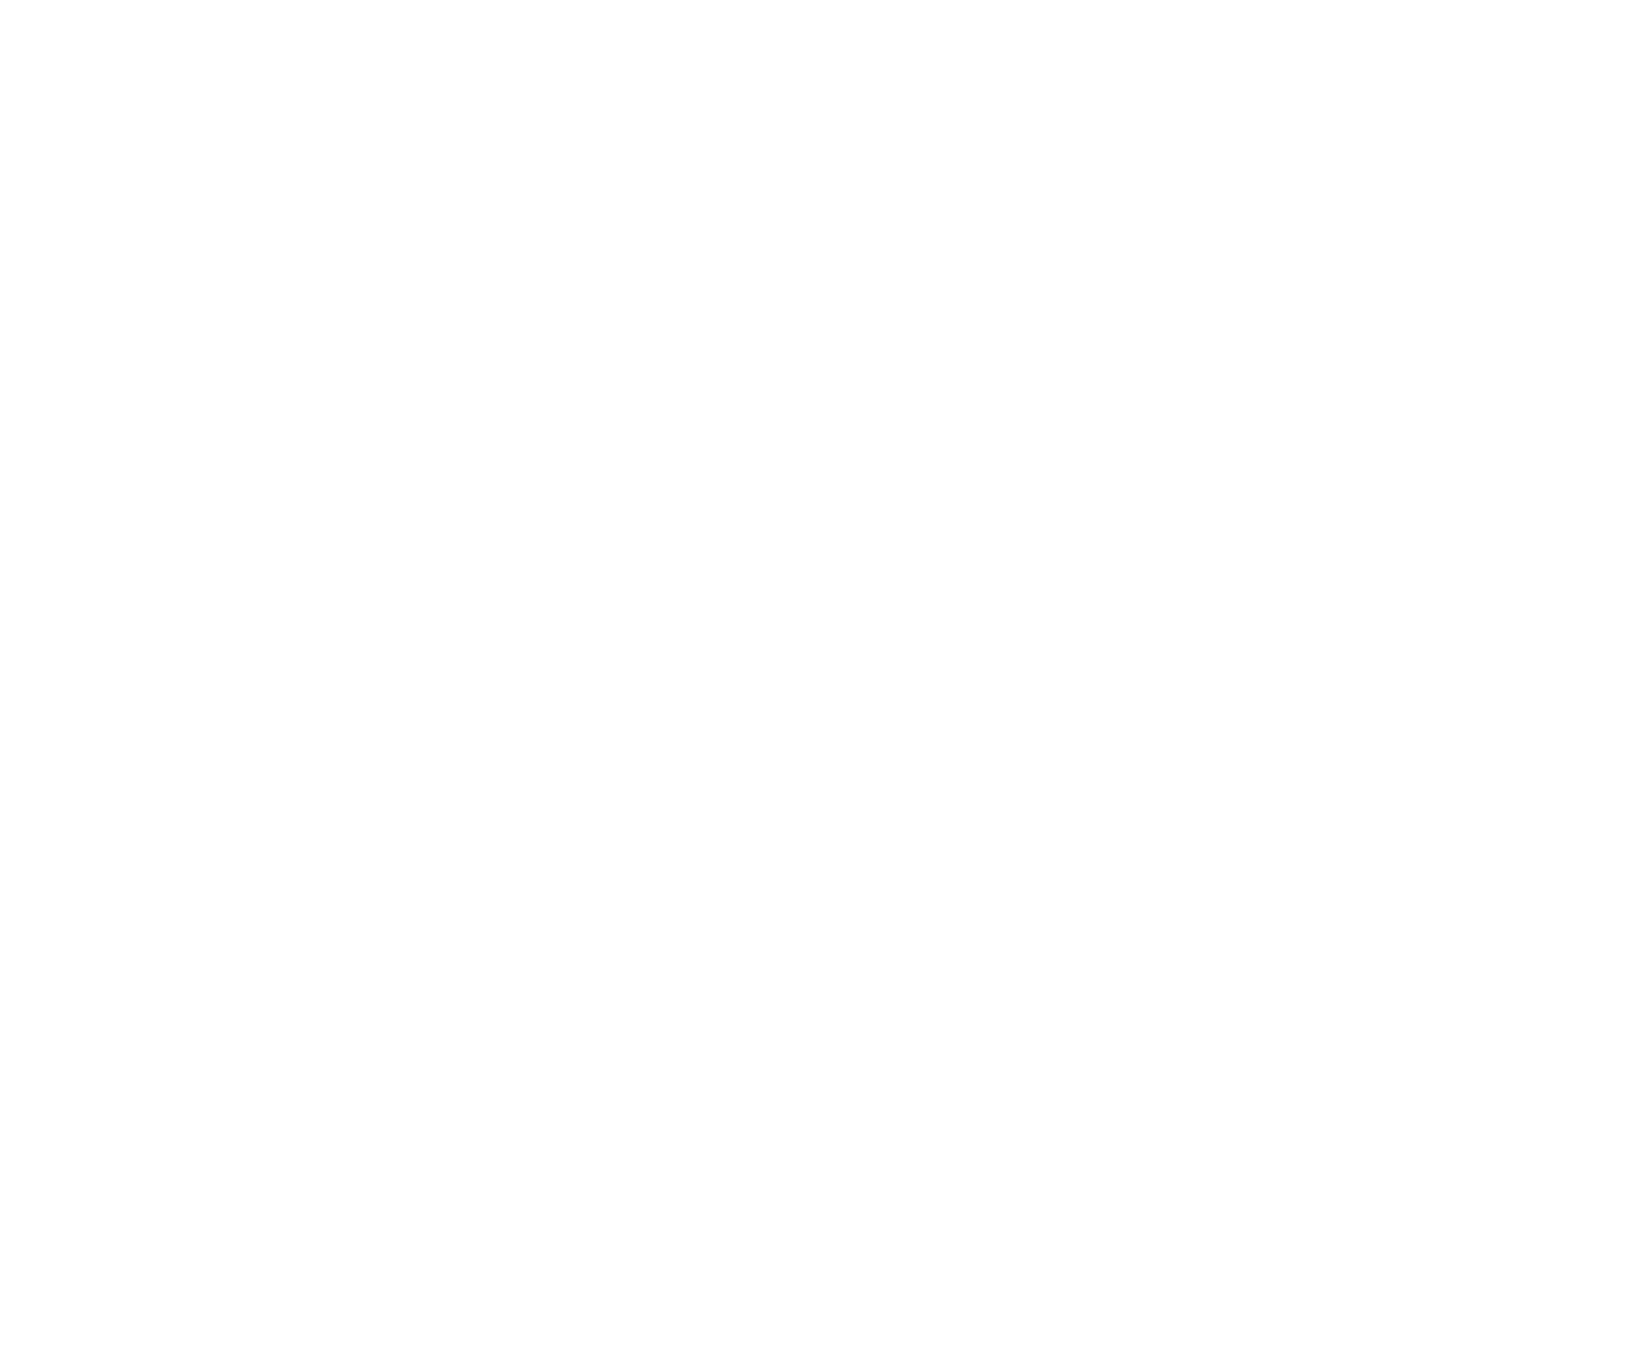 VCMB LM